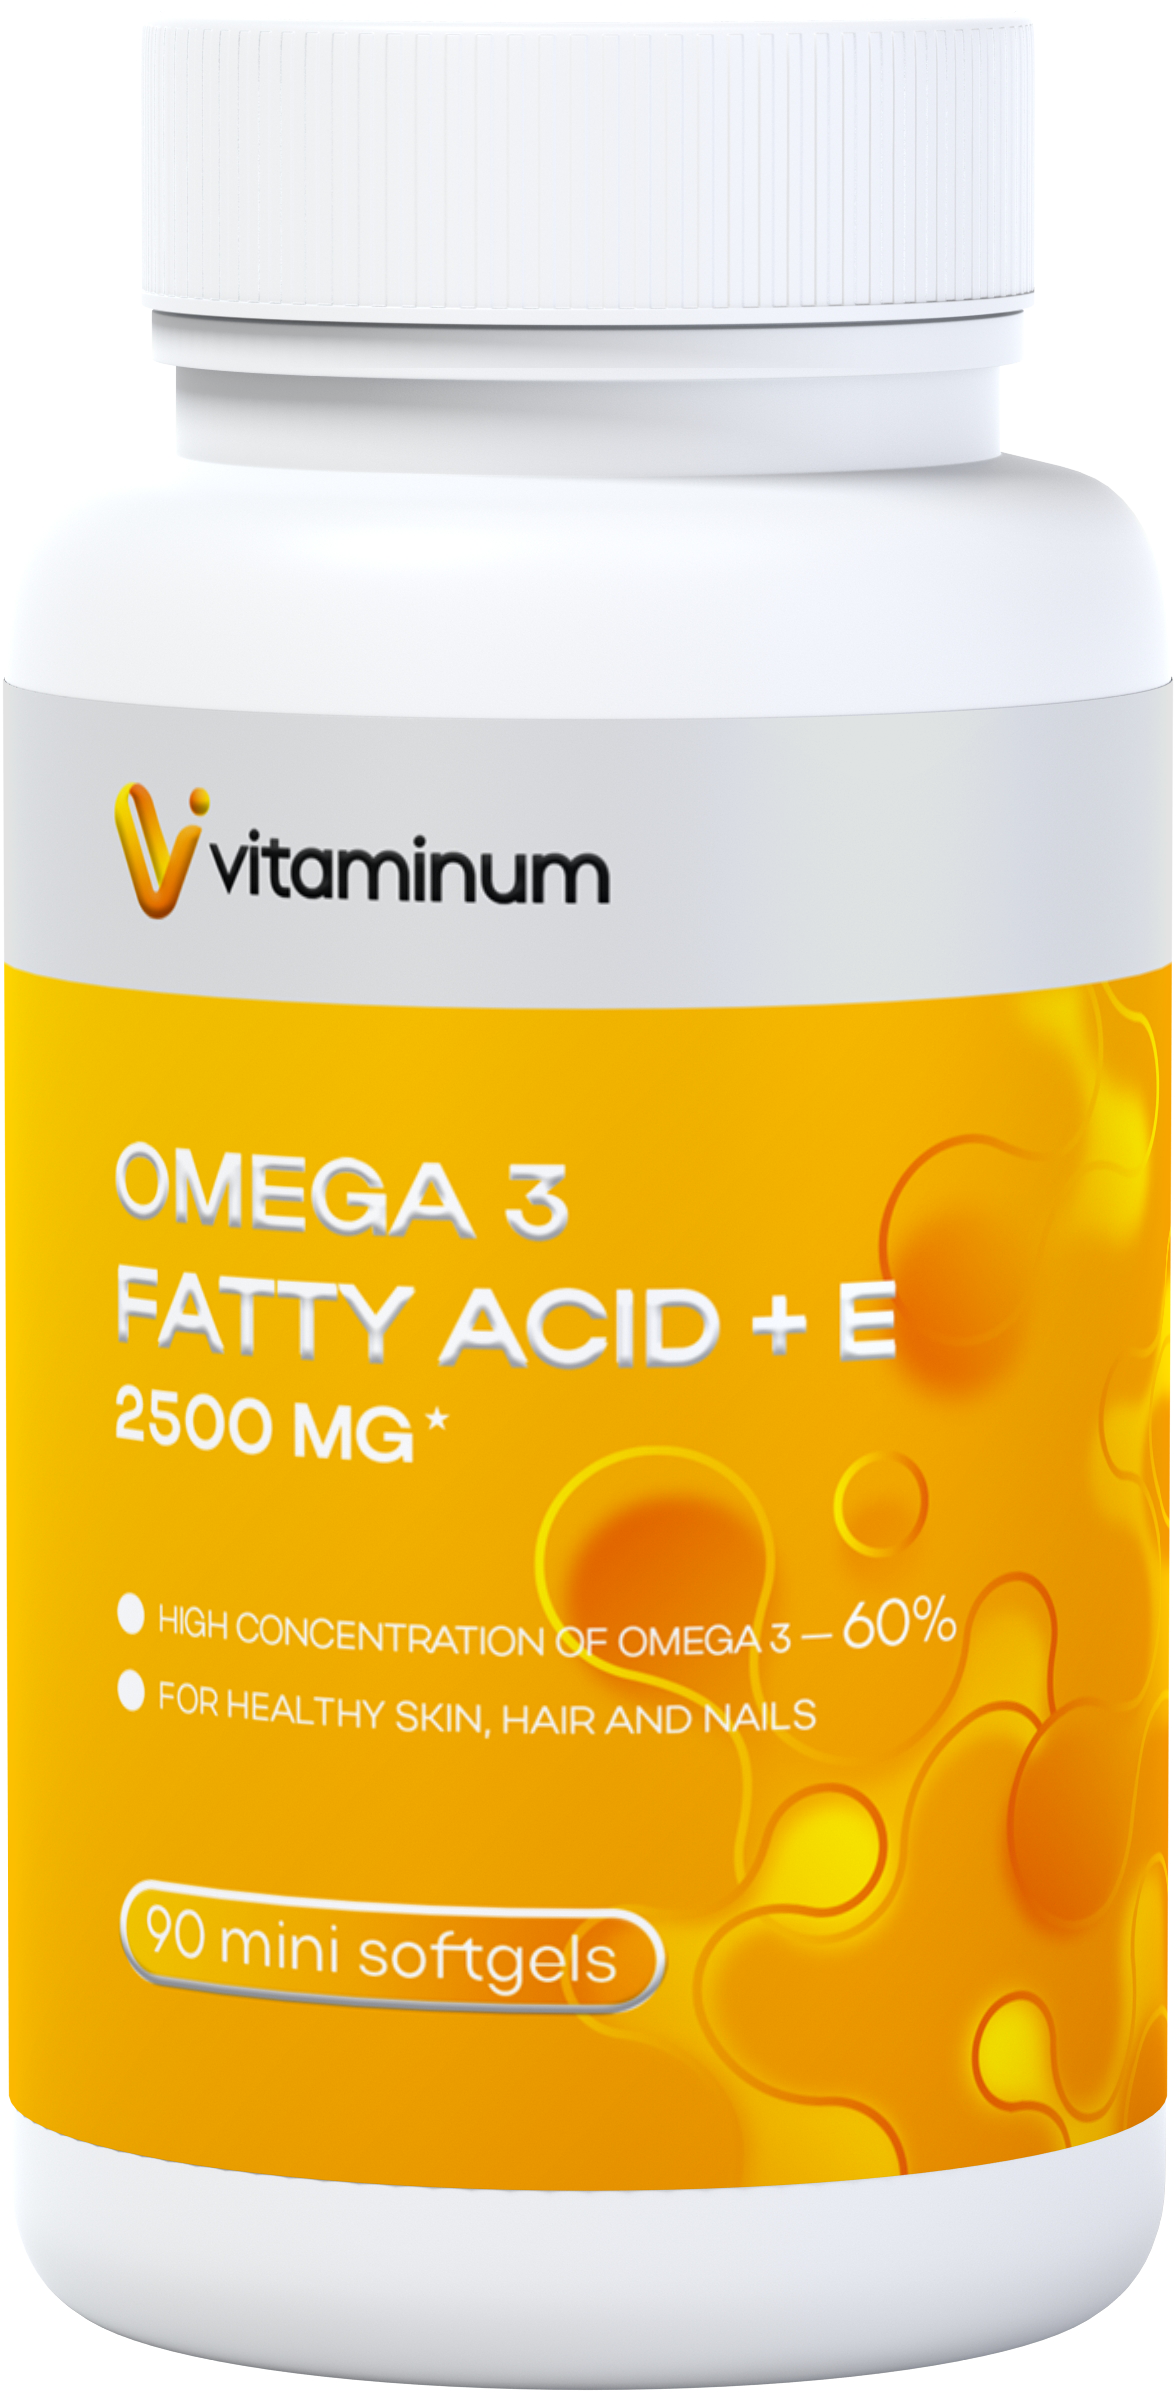  Vitaminum ОМЕГА 3 60% + витамин Е (2500 MG*) 90 капсул 700 мг   в Великом Новгороде